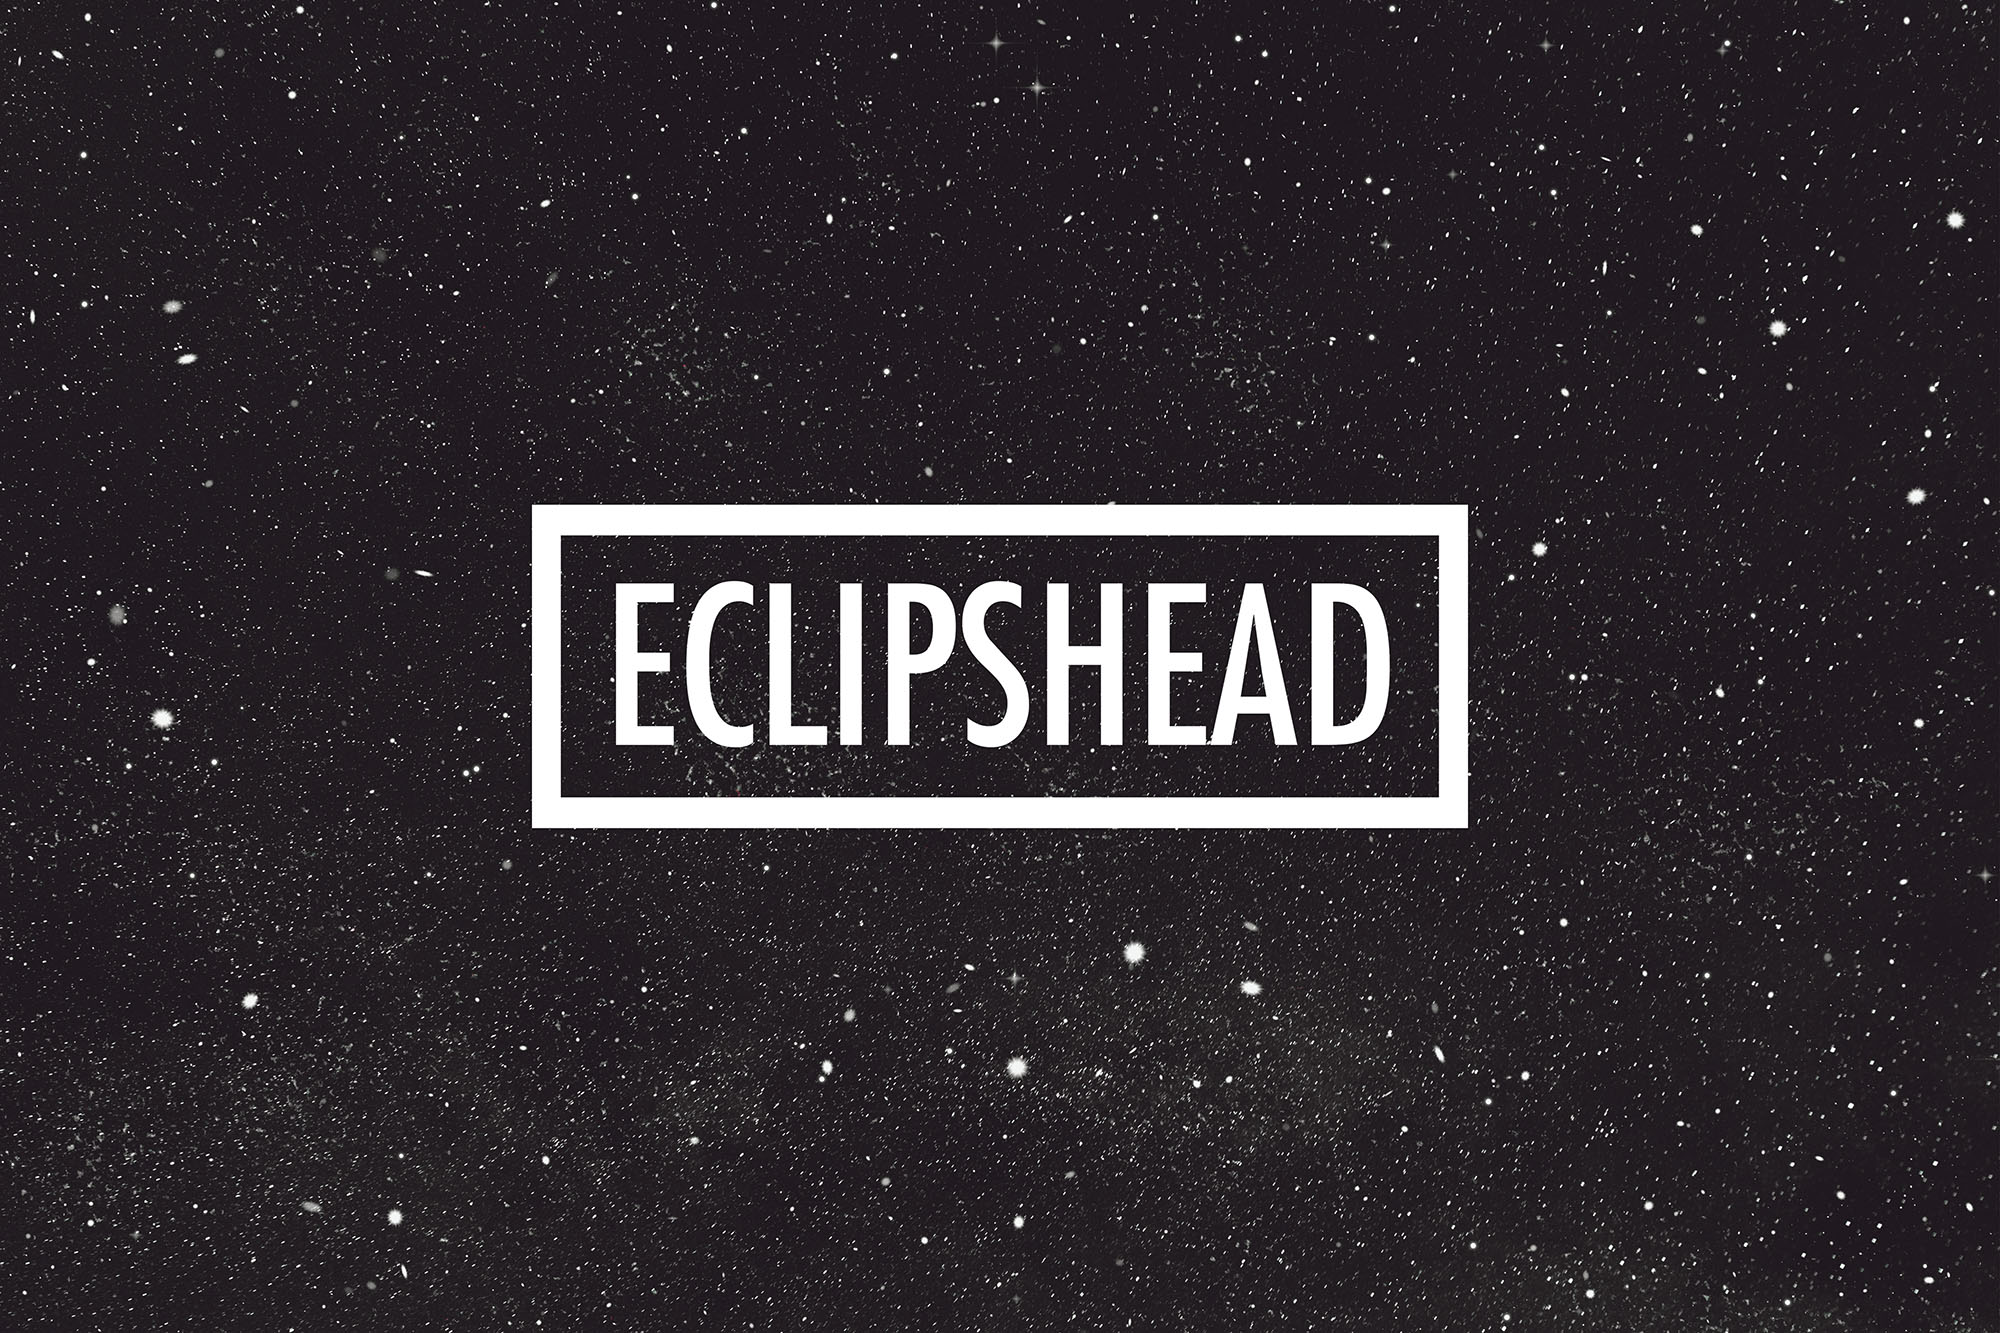 (c) Eclipshead.com